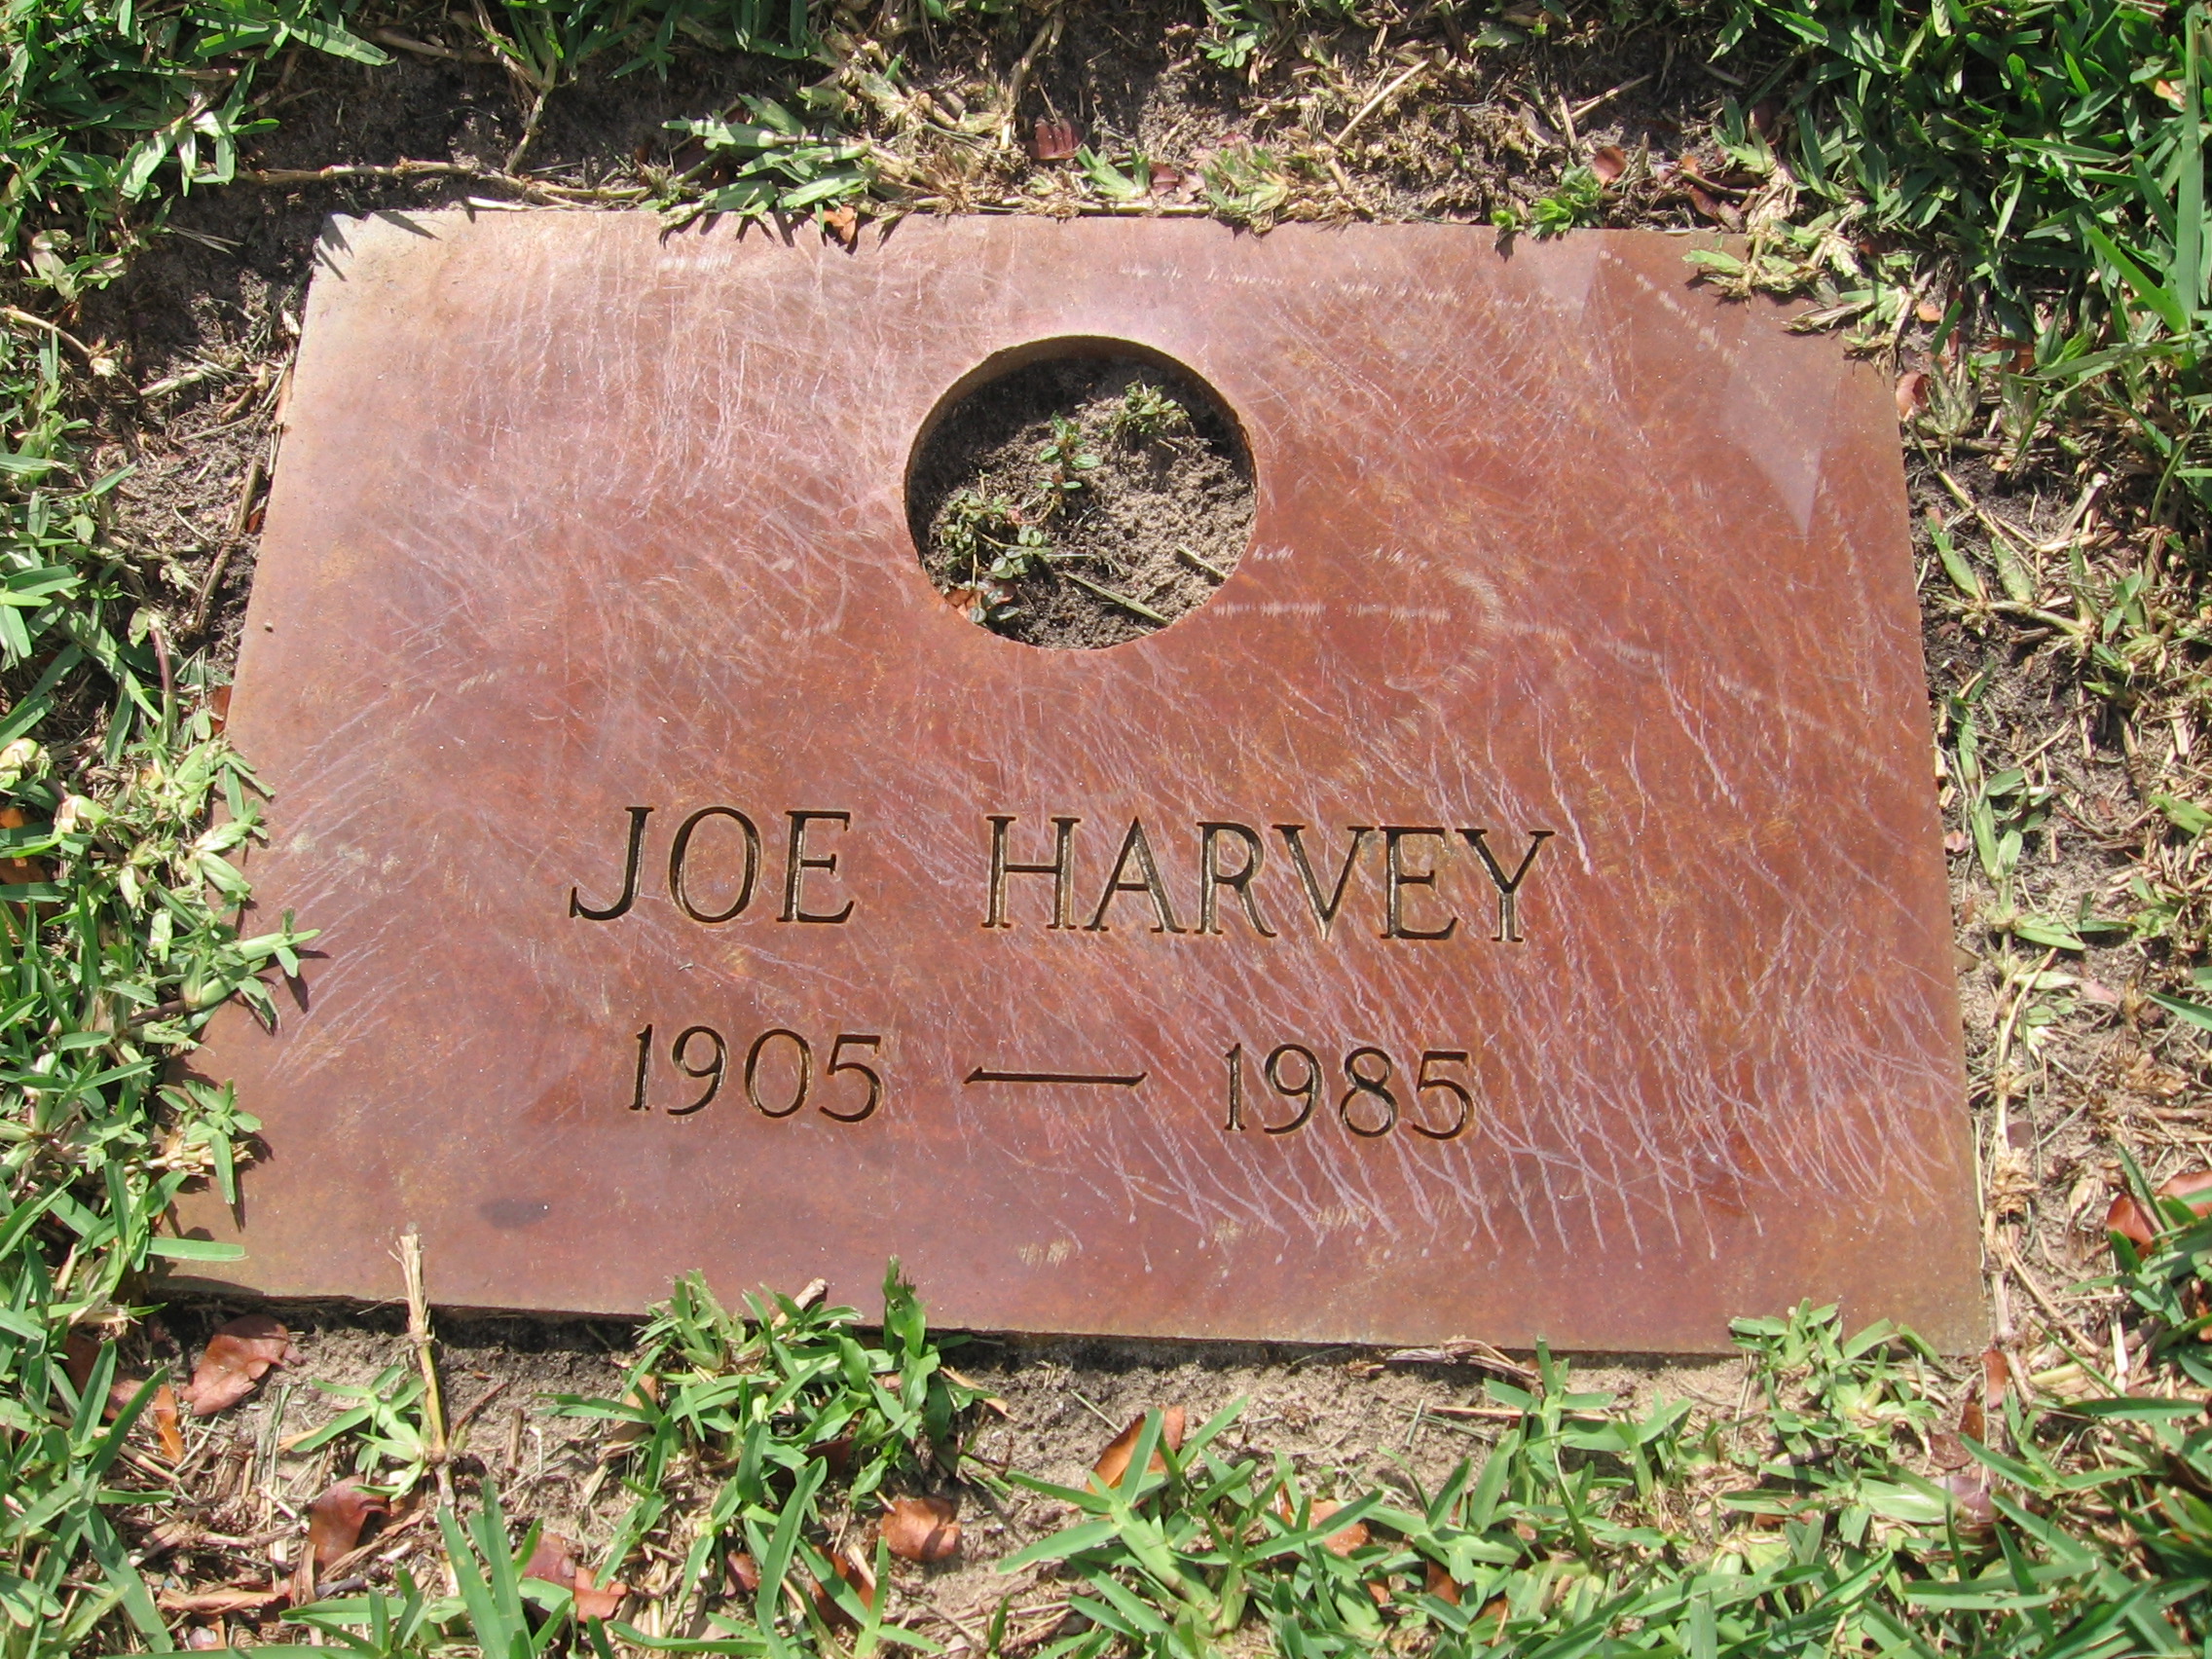 Joe Harvey